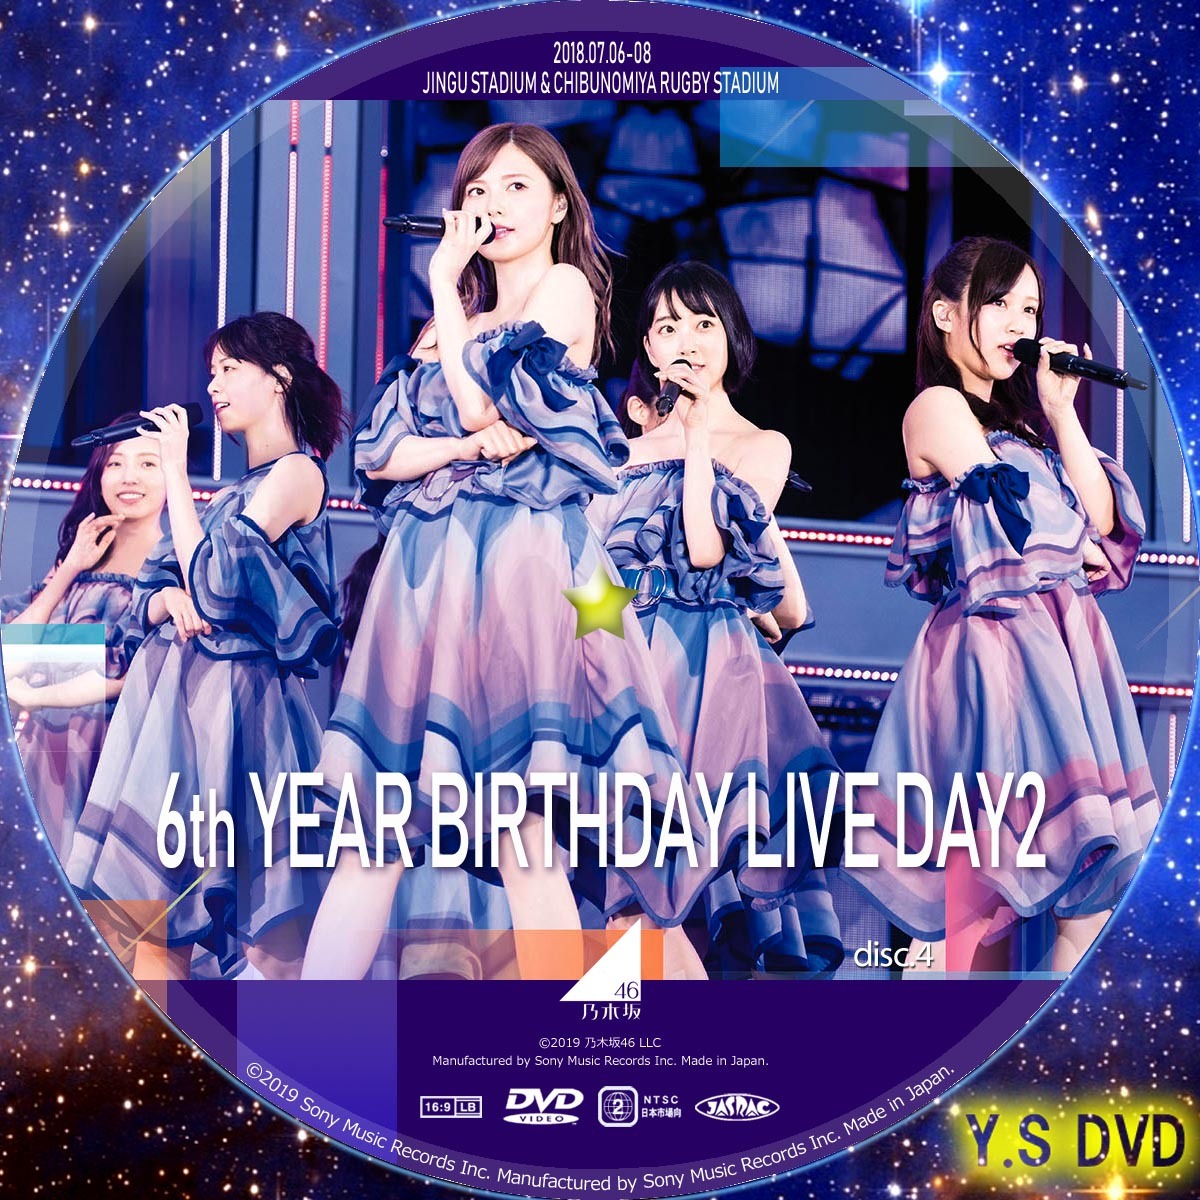 乃木坂46 6th YEAR BIRTHDAY LIVE DVD 完全生産限定盤 - ミュージック